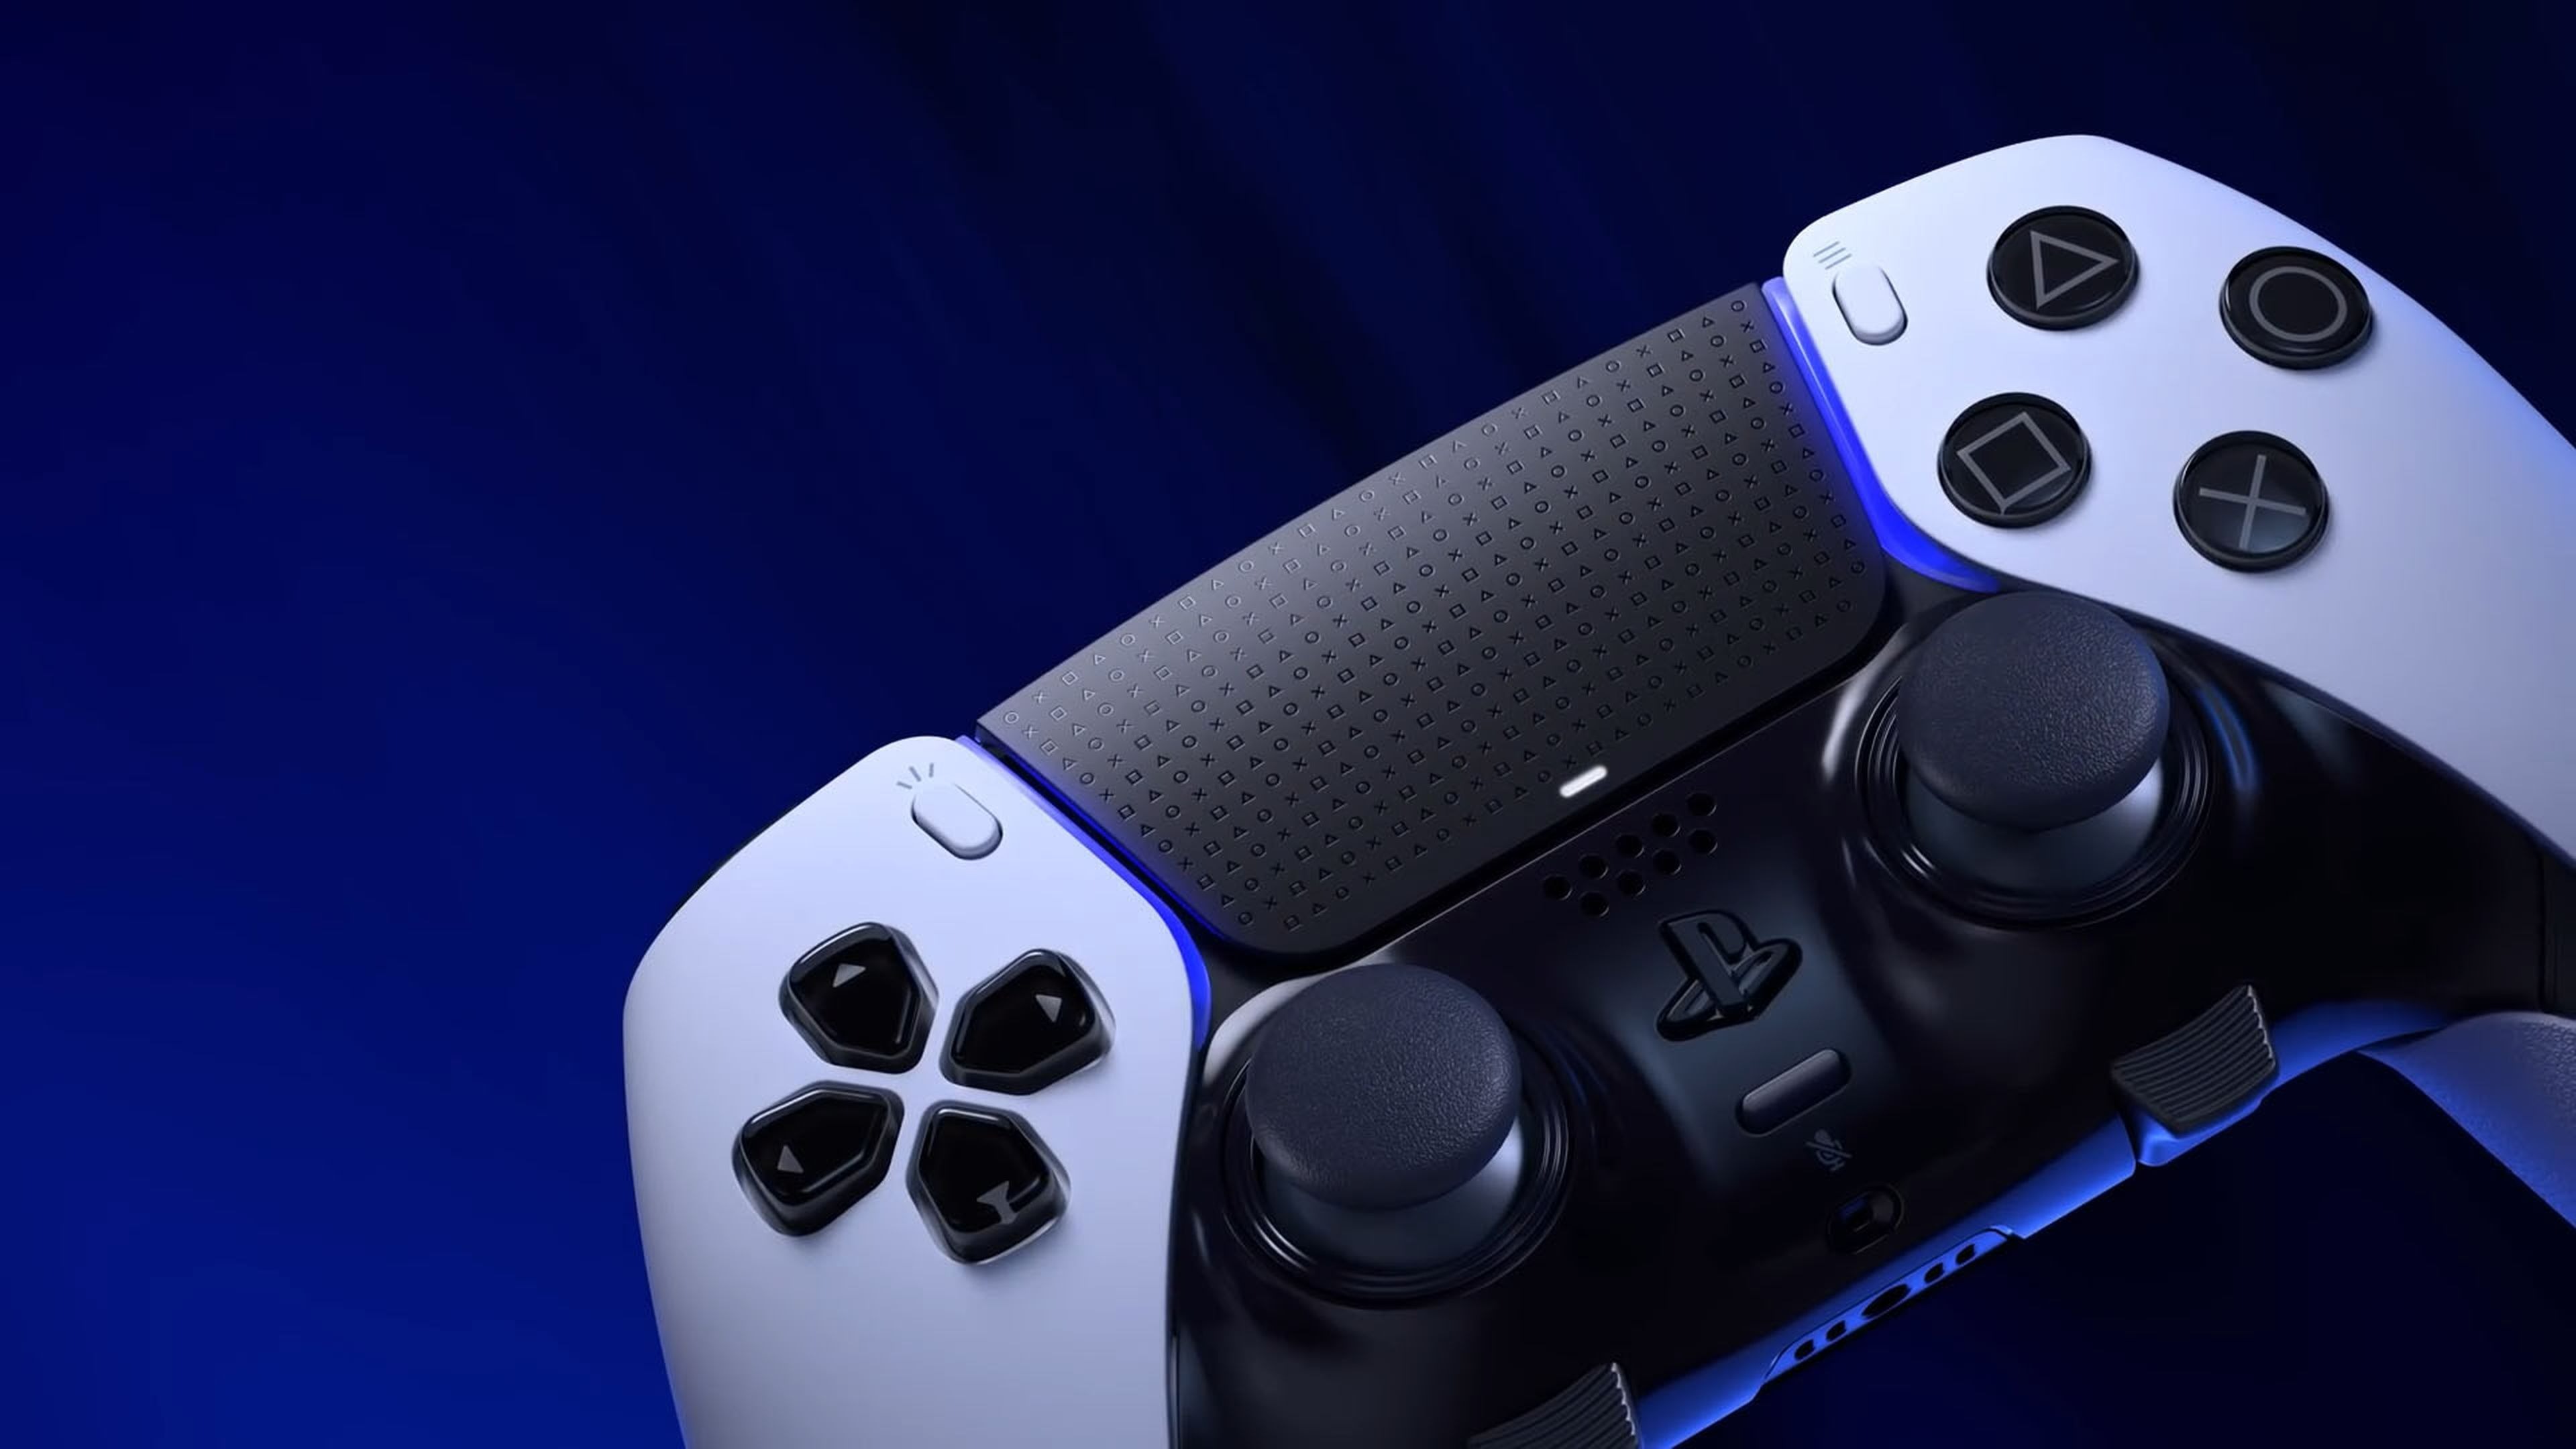 La tienda PlayStation Direct abre en España: PS5, juegos en físico y  accesorios